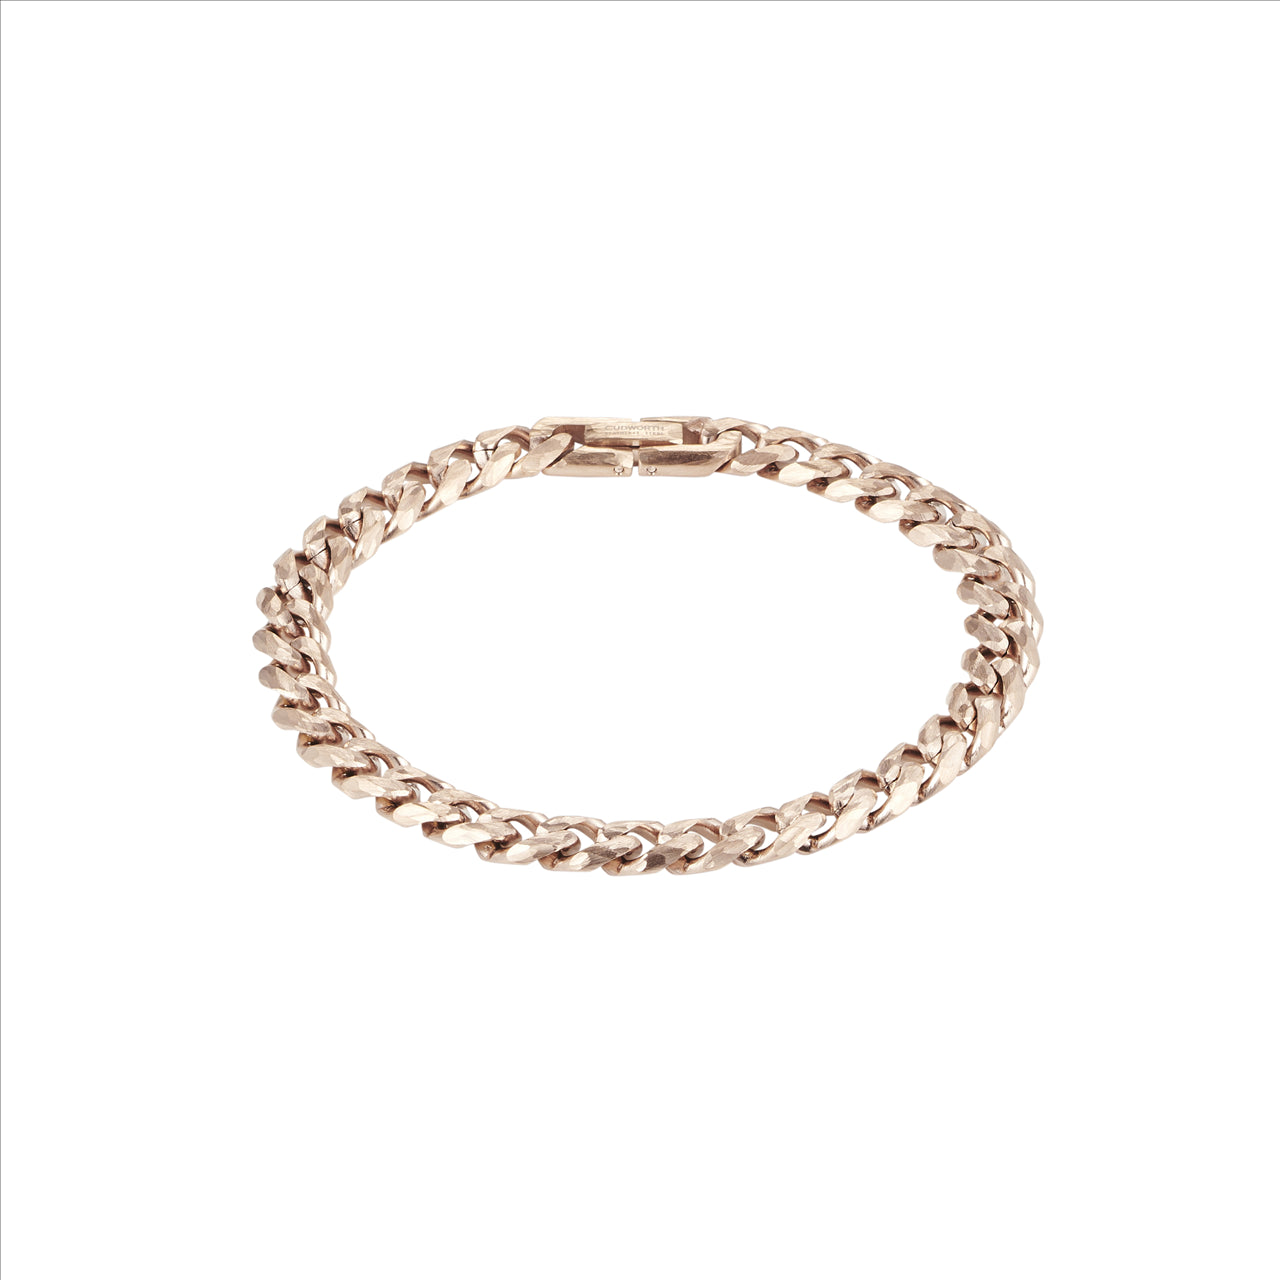 Bracelet - Rose gold plated Stainless steel chain bracelet